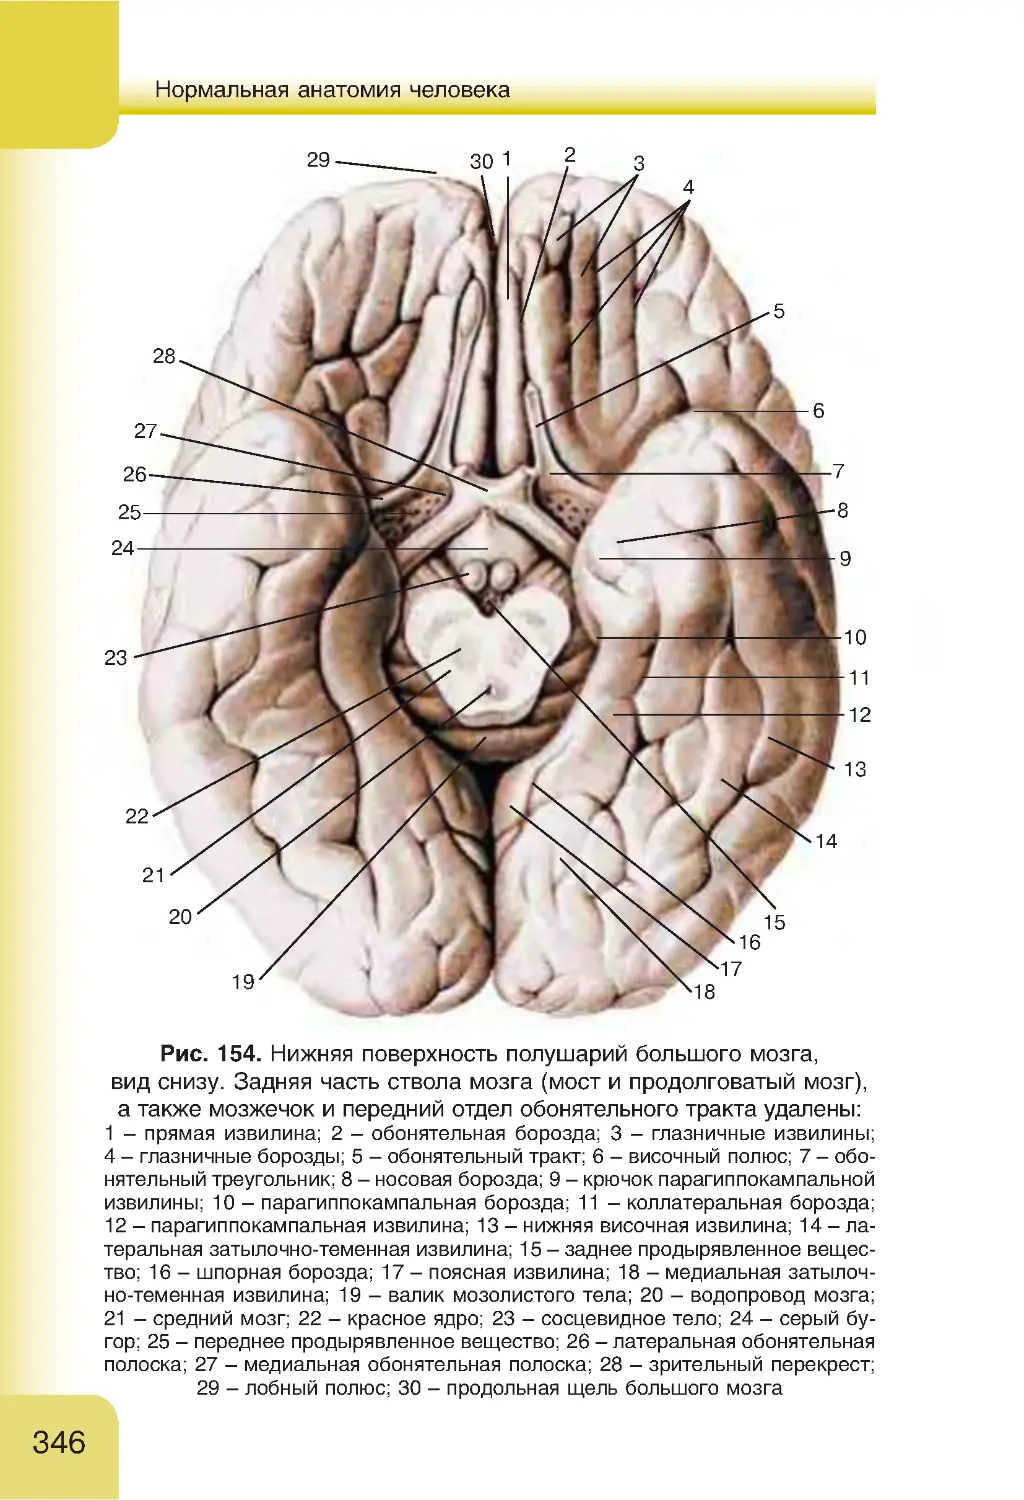 Обонятельные доли мозга. Борозды и извилины головного мозга анатомия. Борозды и извилины нижней поверхности полушария. Борозды и извилины нижней поверхности полушария большого мозга. Нижняя поверхность конечного мозга анатомия.